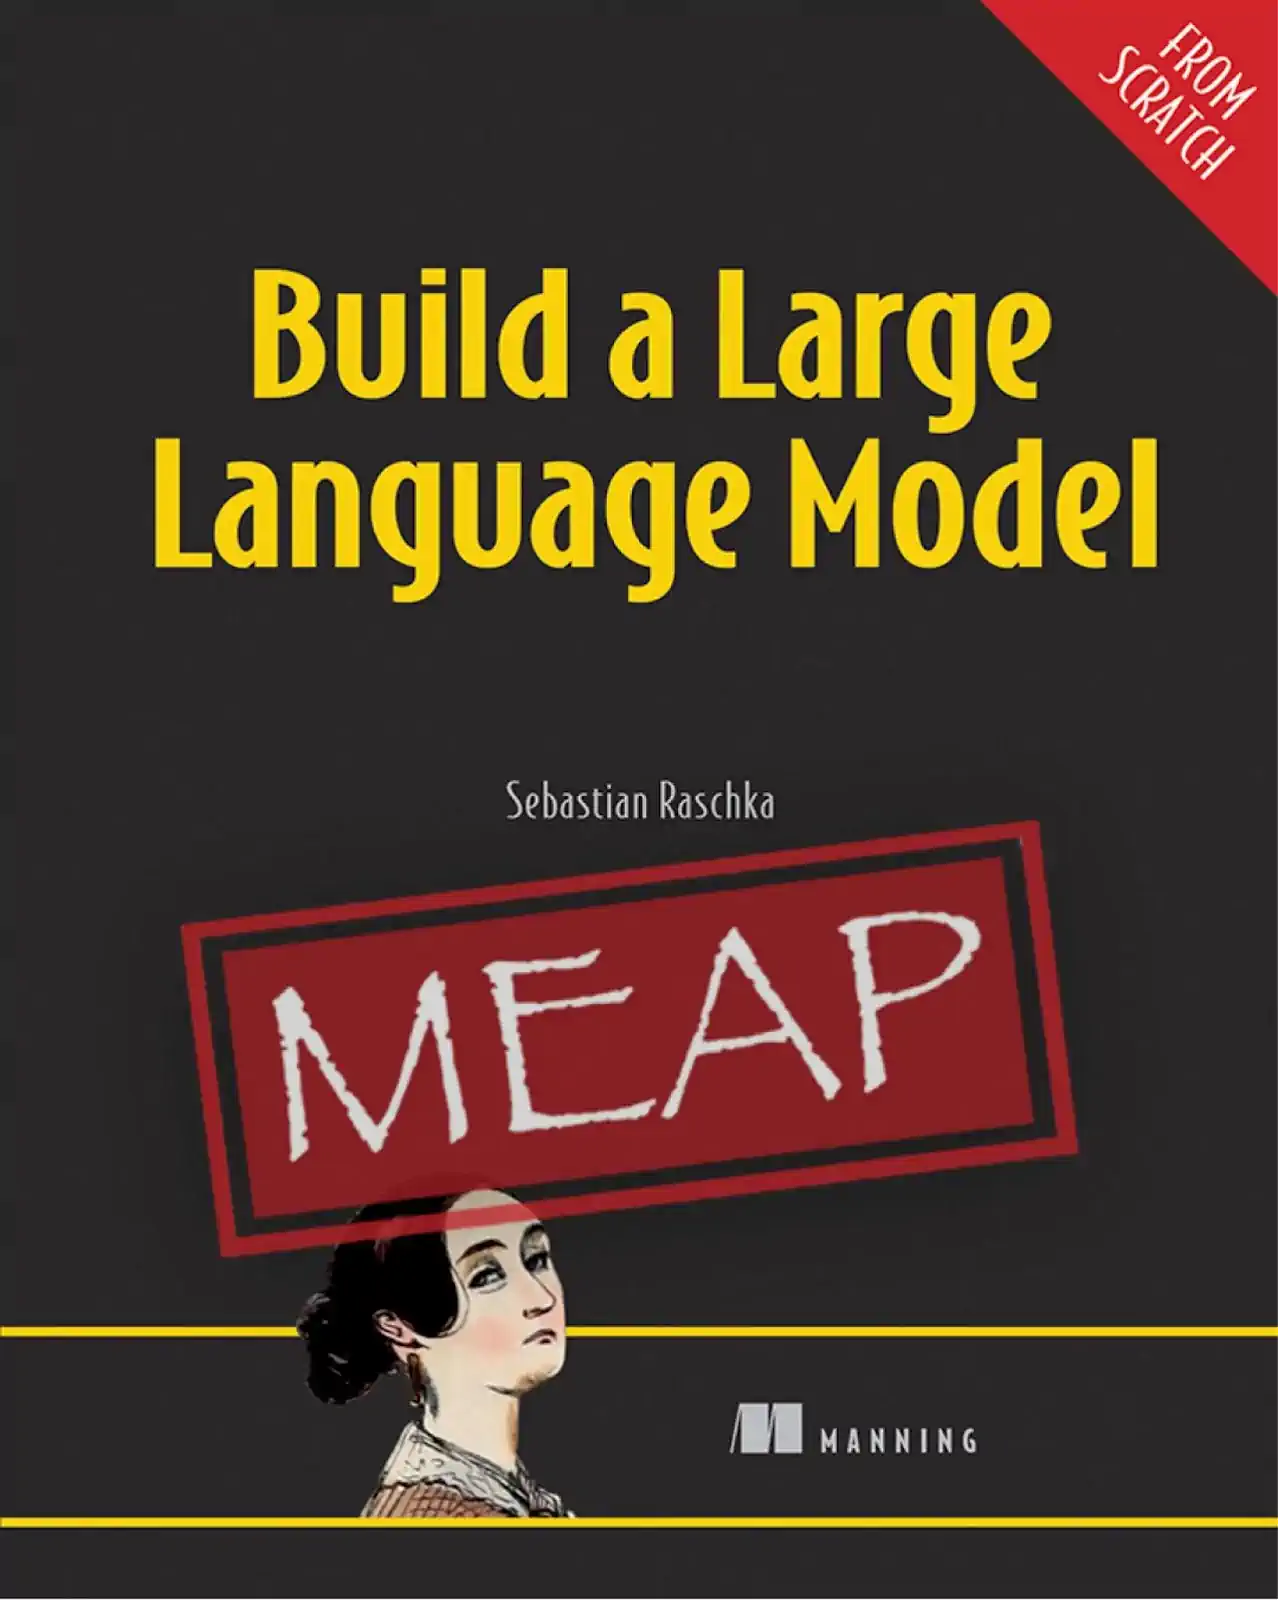 打造一款大型语言模型书籍封面 http://mng.bz/amjo